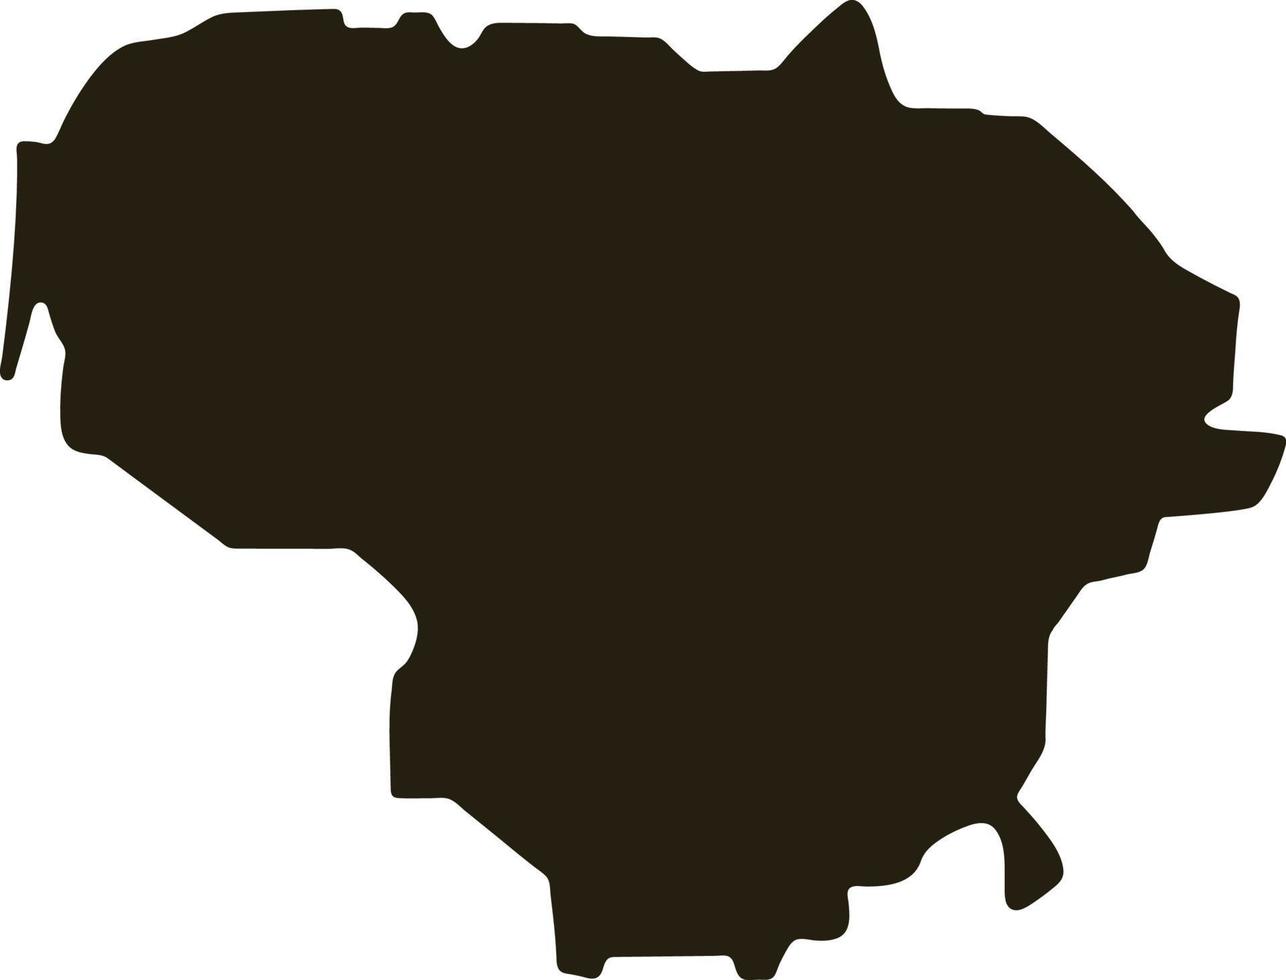 mappa della lituania. illustrazione vettoriale mappa nera solida